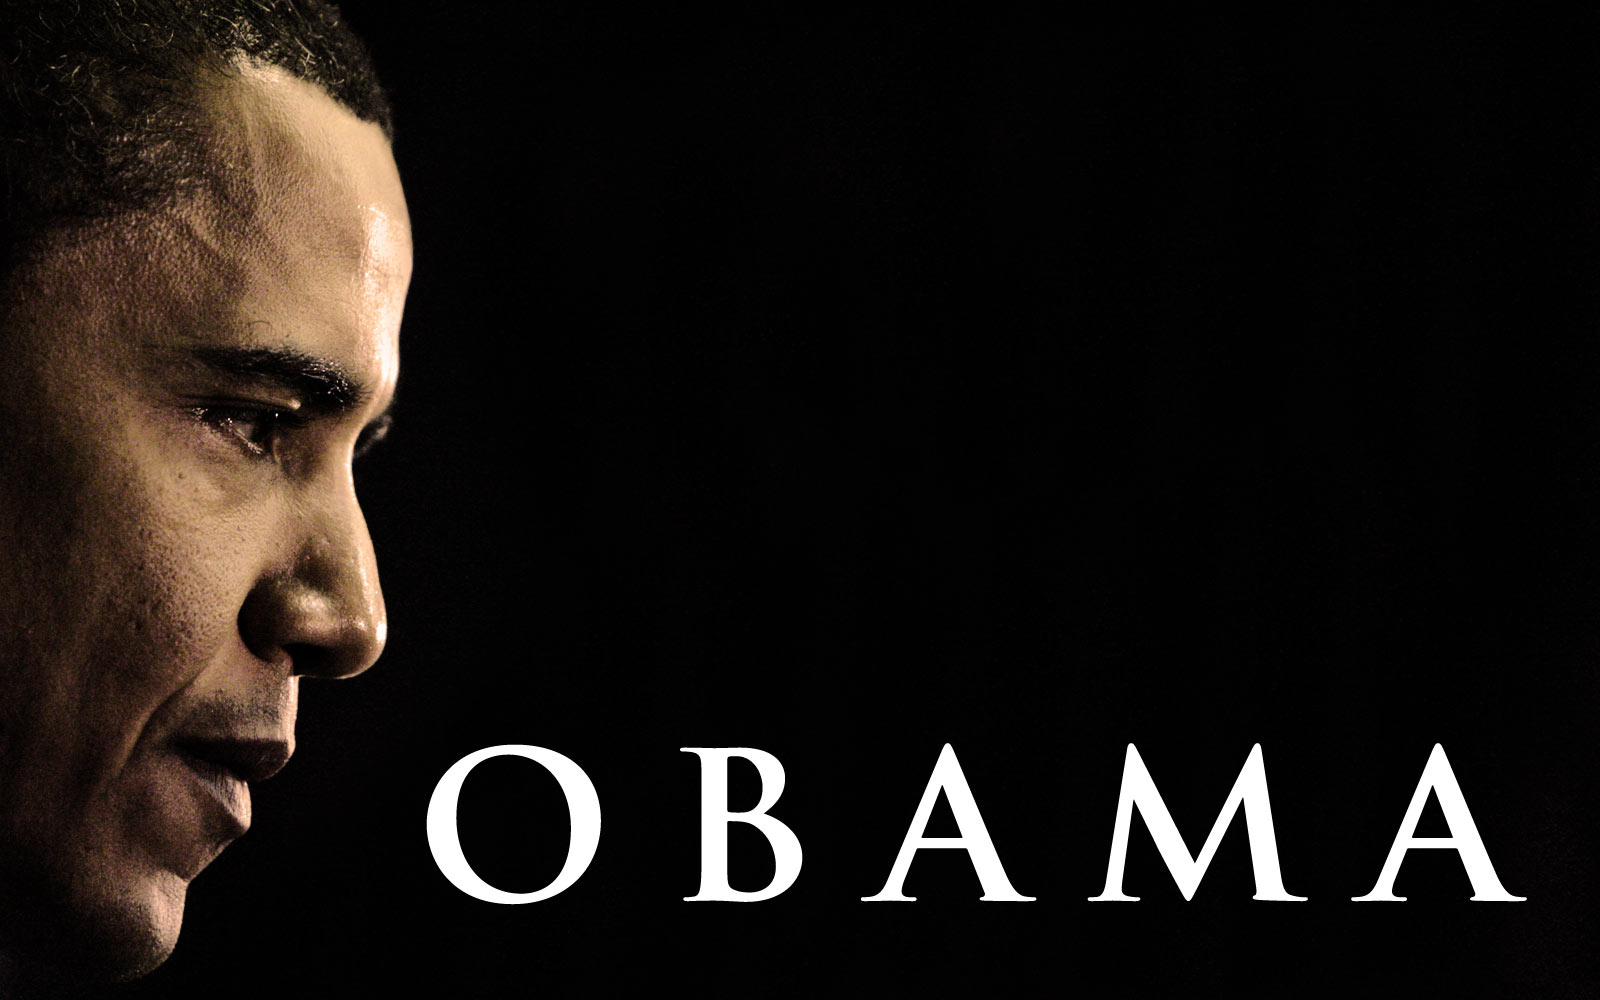 Obama Image High Definition Desktop Wallpaper Make Your Cool